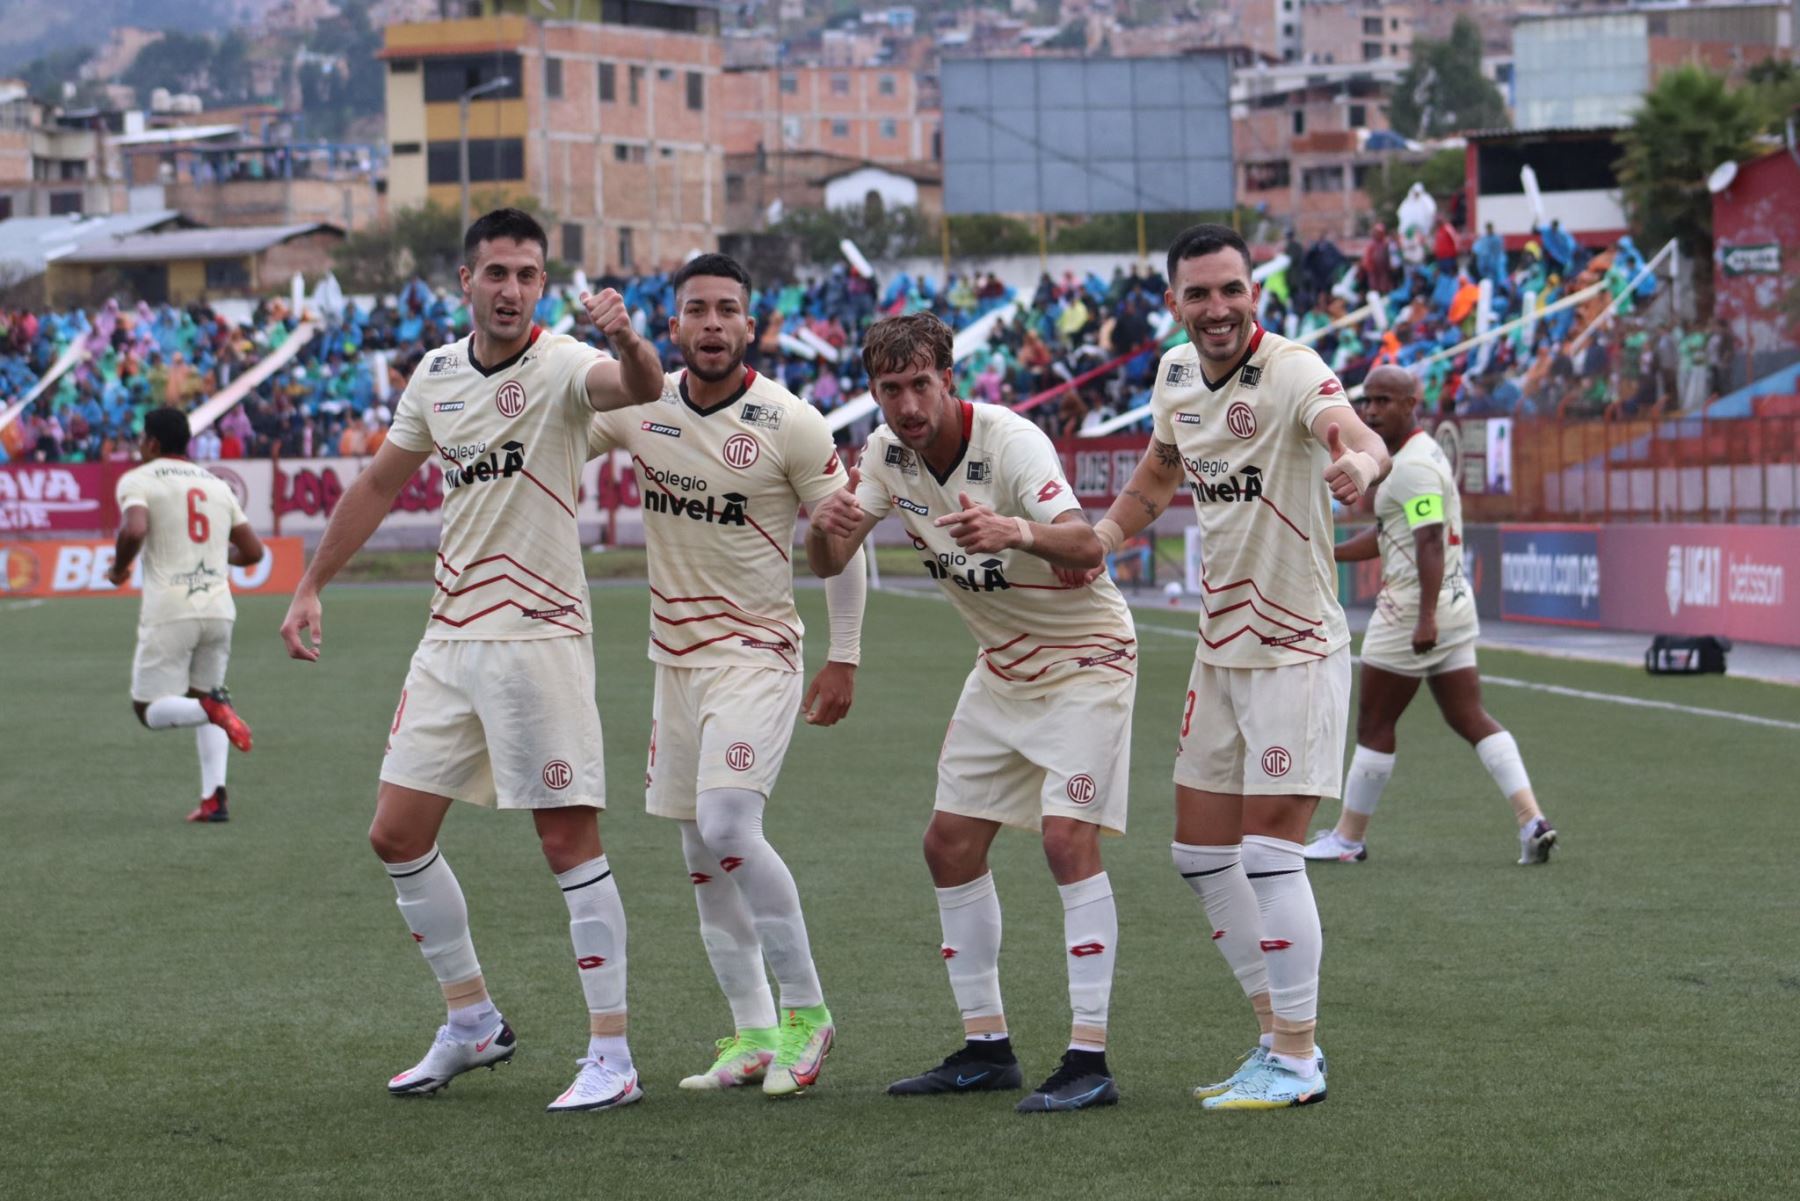 Celebración del gol de UTC en partido contra Universitario de deportes en Cajamarca Foto: Twitter